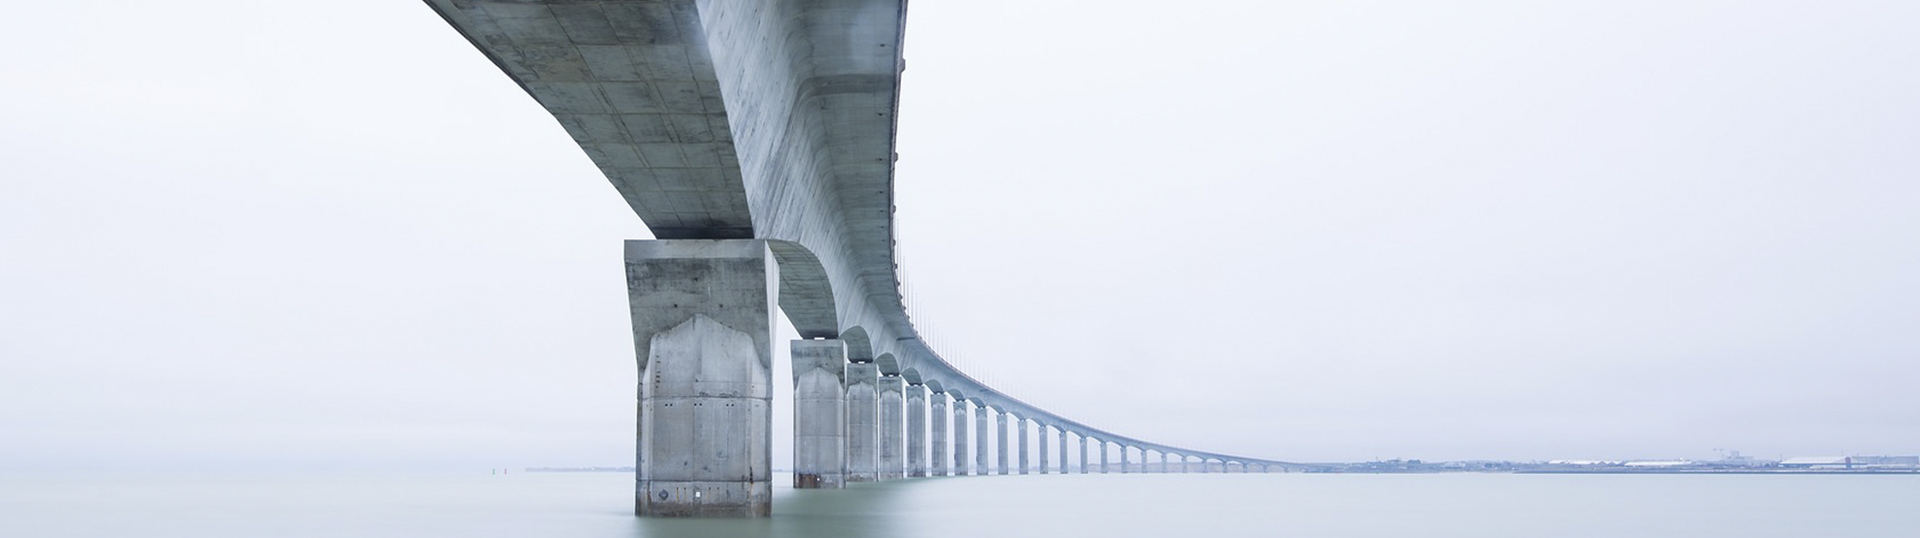 Bridge – zintegrowane rozwiązania 4 BIM do projektowania mostów